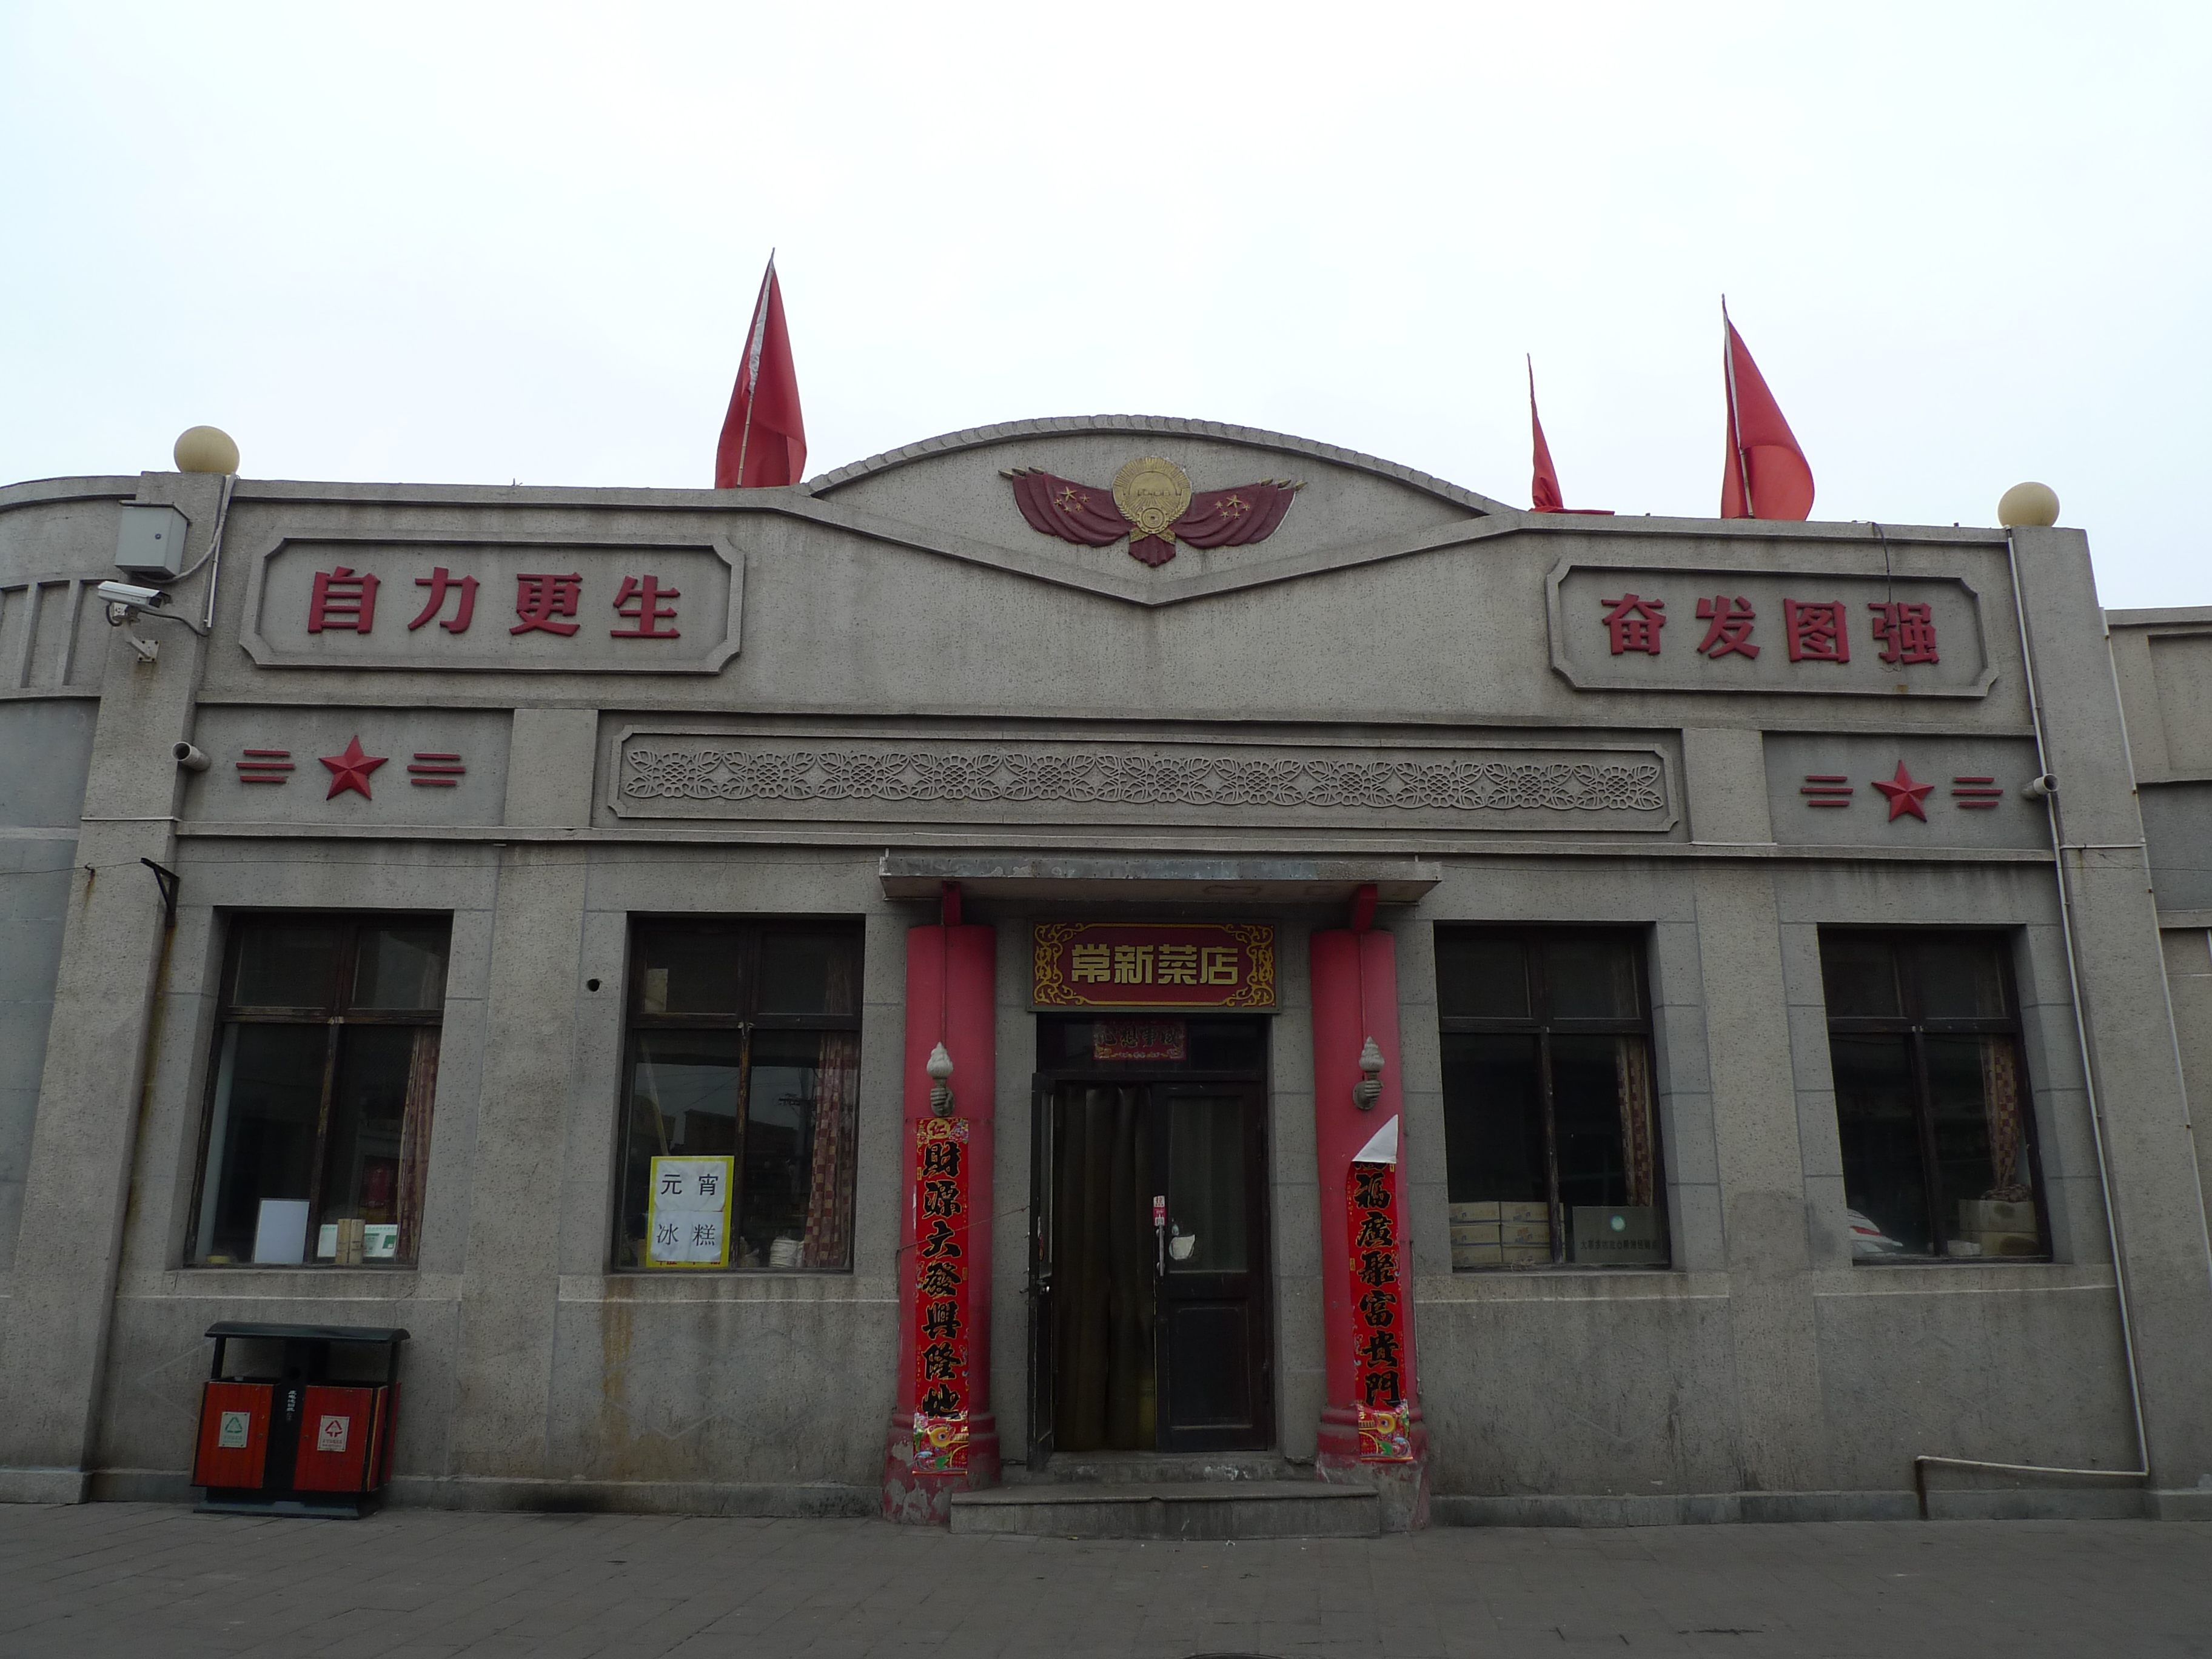 上五图:山西省,昔阳县,红旗一条街